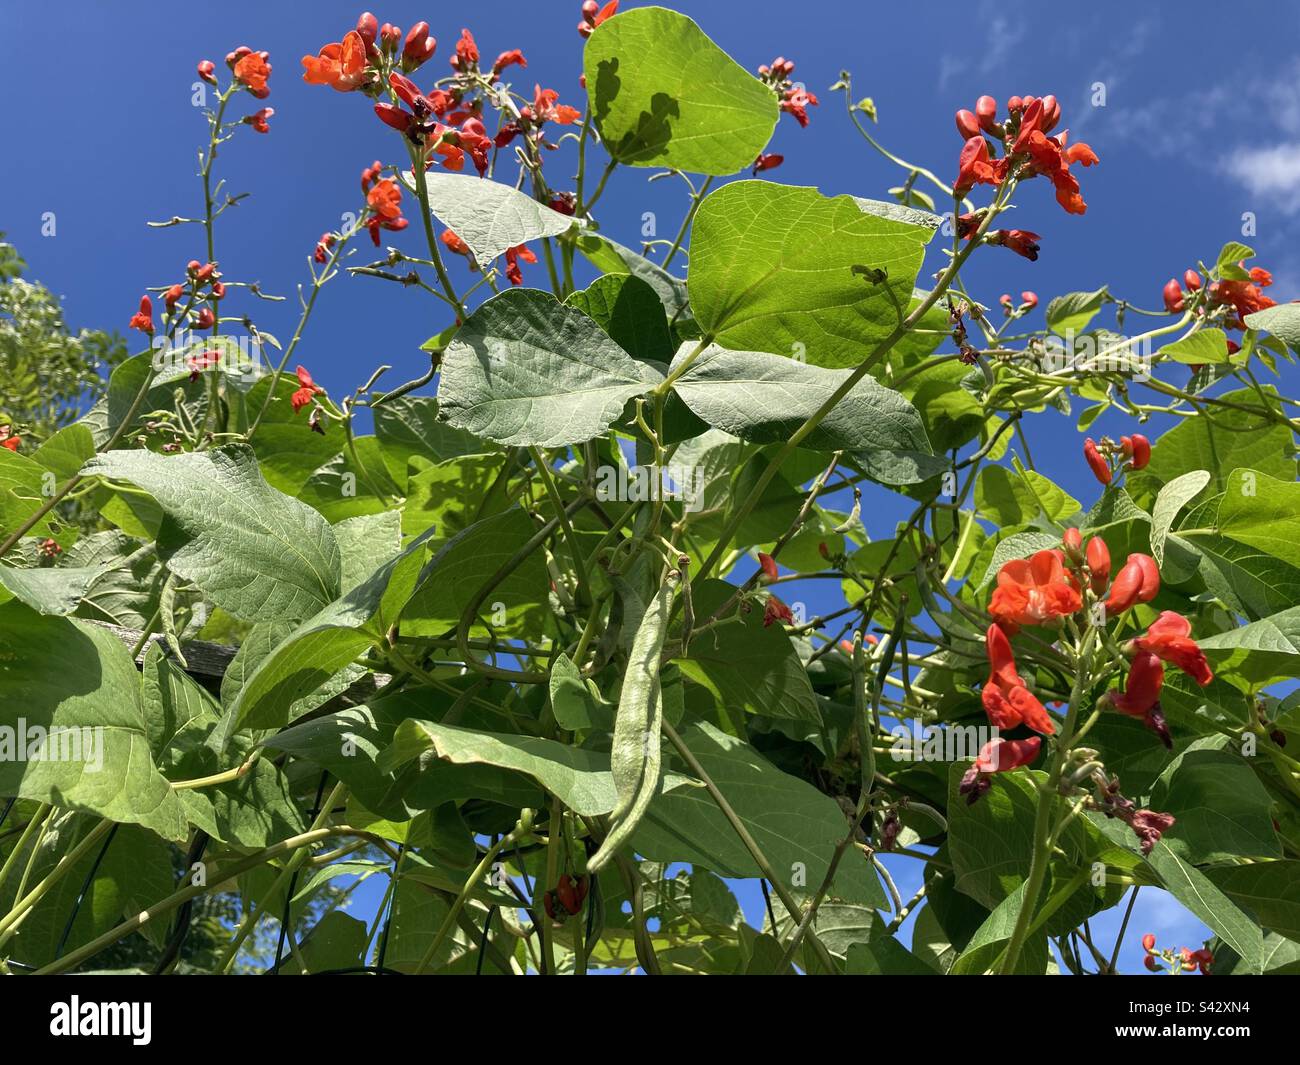 Fresh, organic Scarlet Runner beans and flowers against blue sky Stock Photo